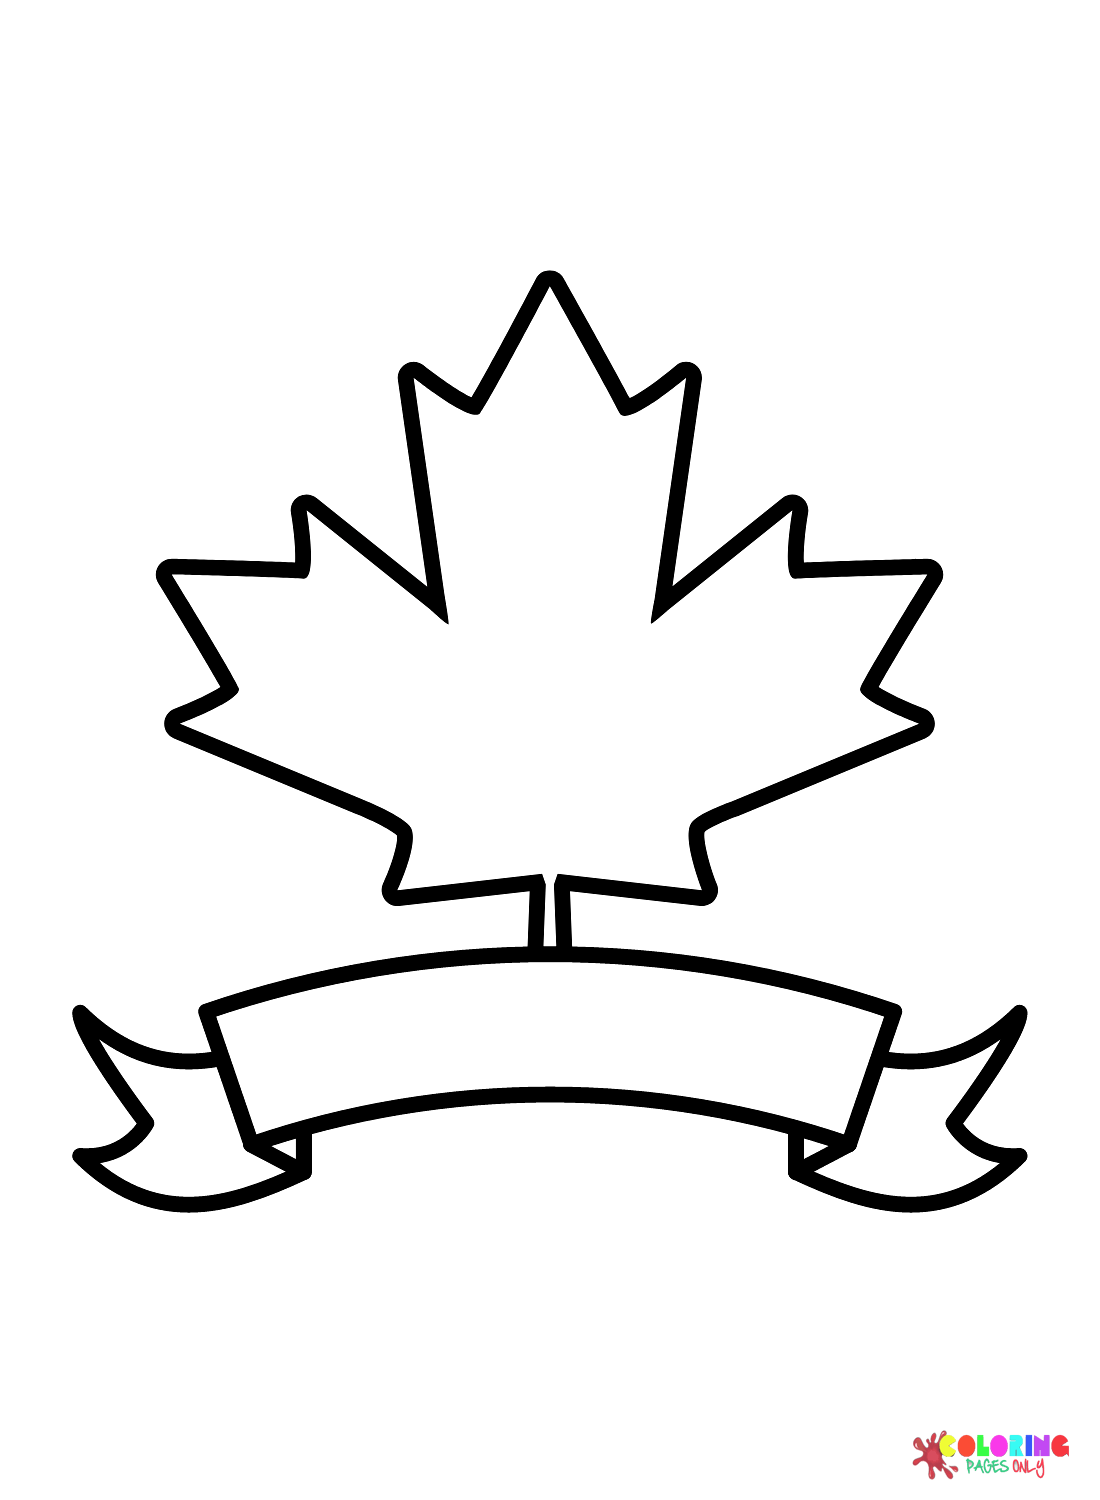 الورقة والشريط في يوم كندا من يوم كندا